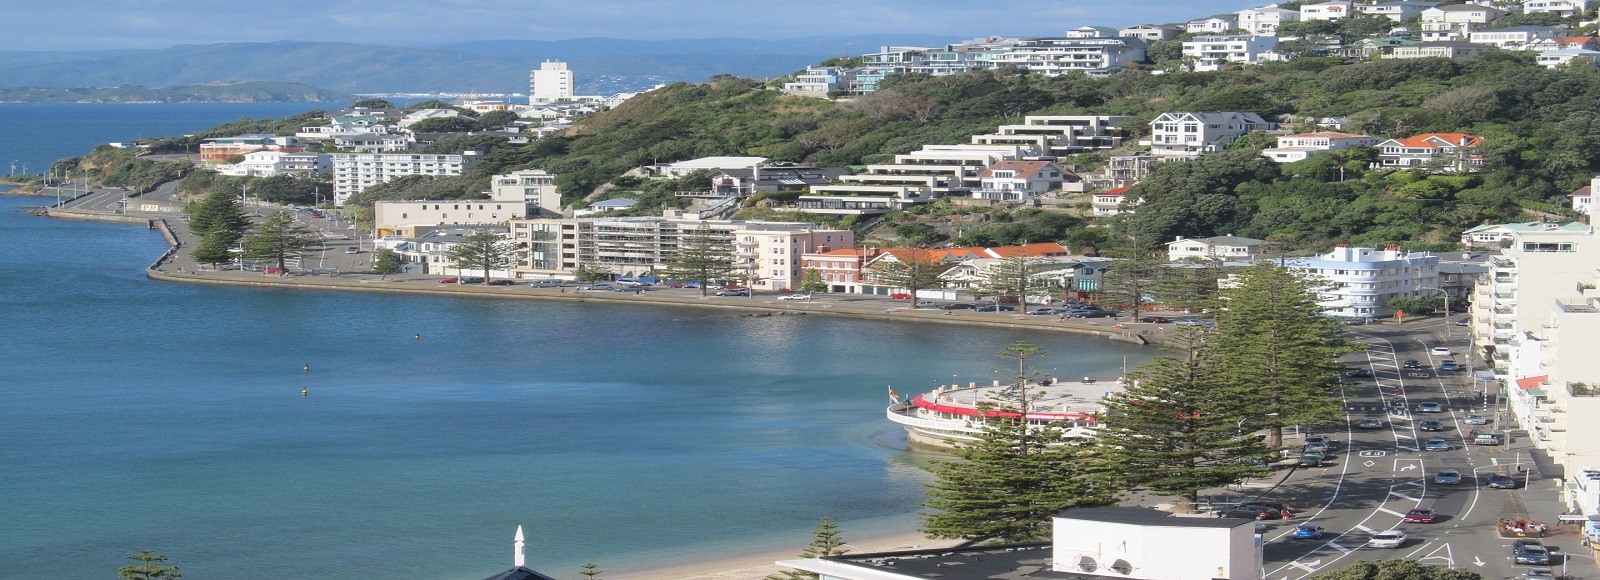 Ofertas de Traslados en Wellington. Traslados económicos en Wellington 